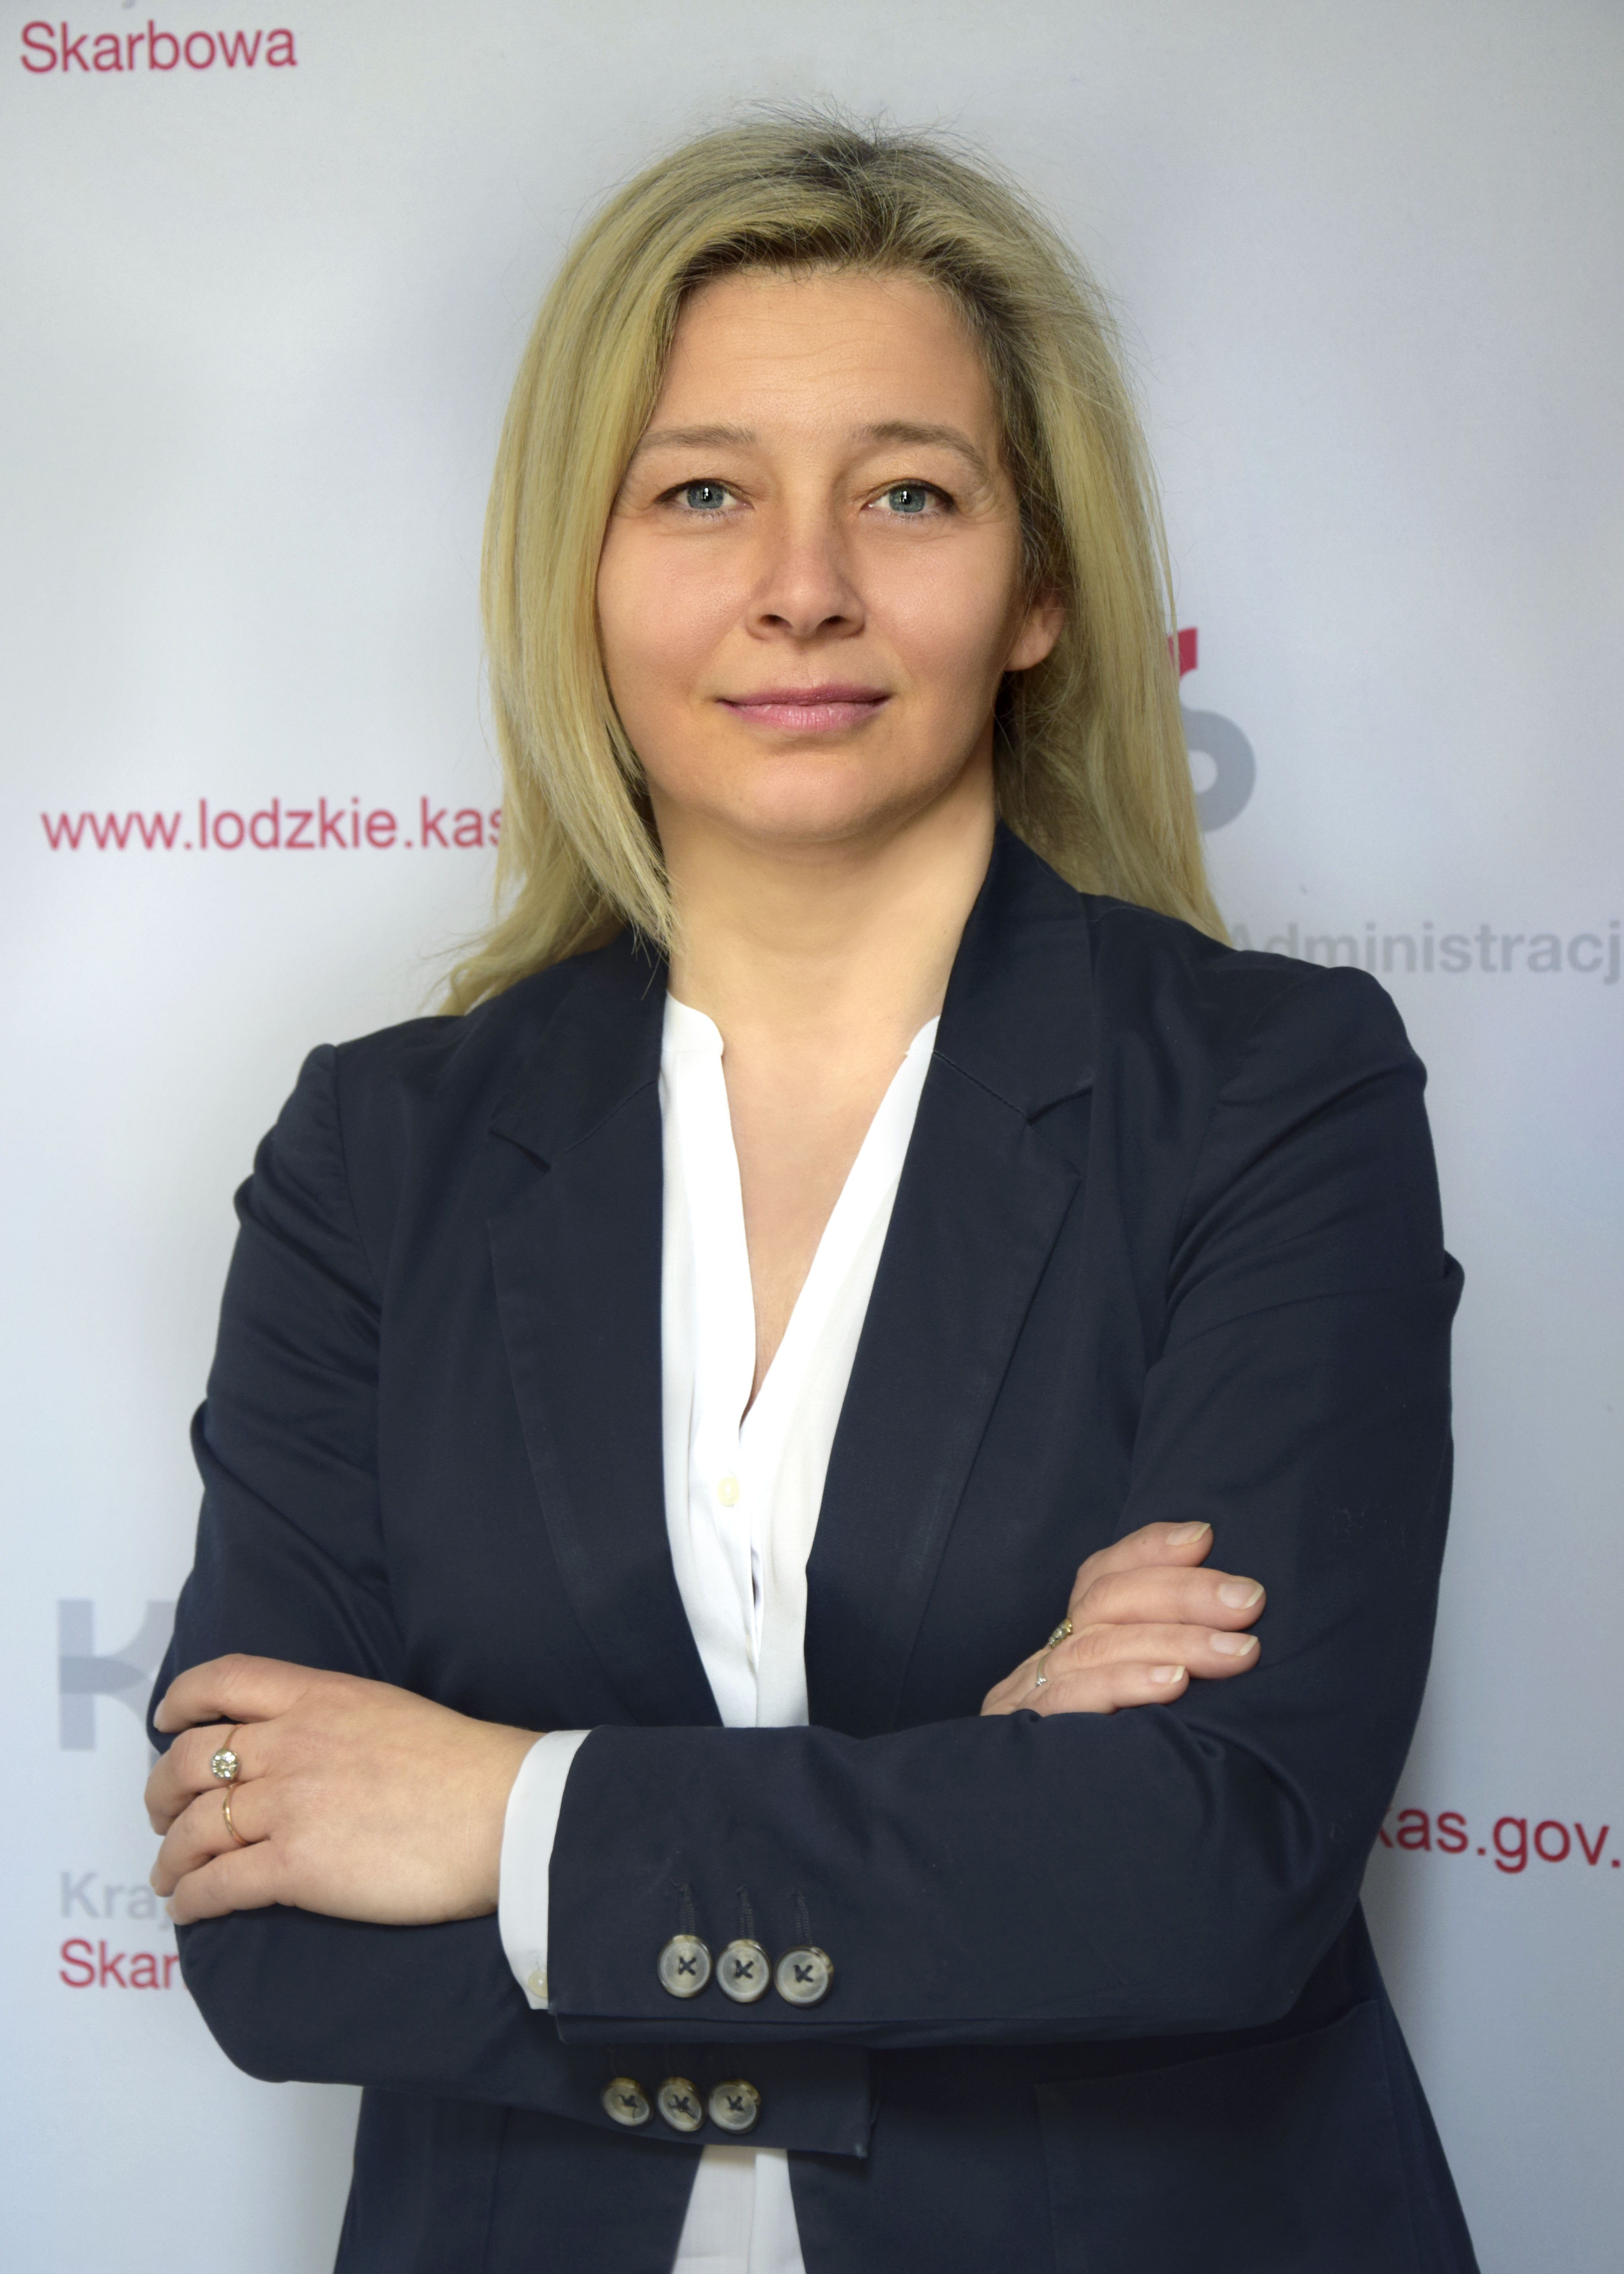 rzecznik prasowy Agnieszka Majchrzak